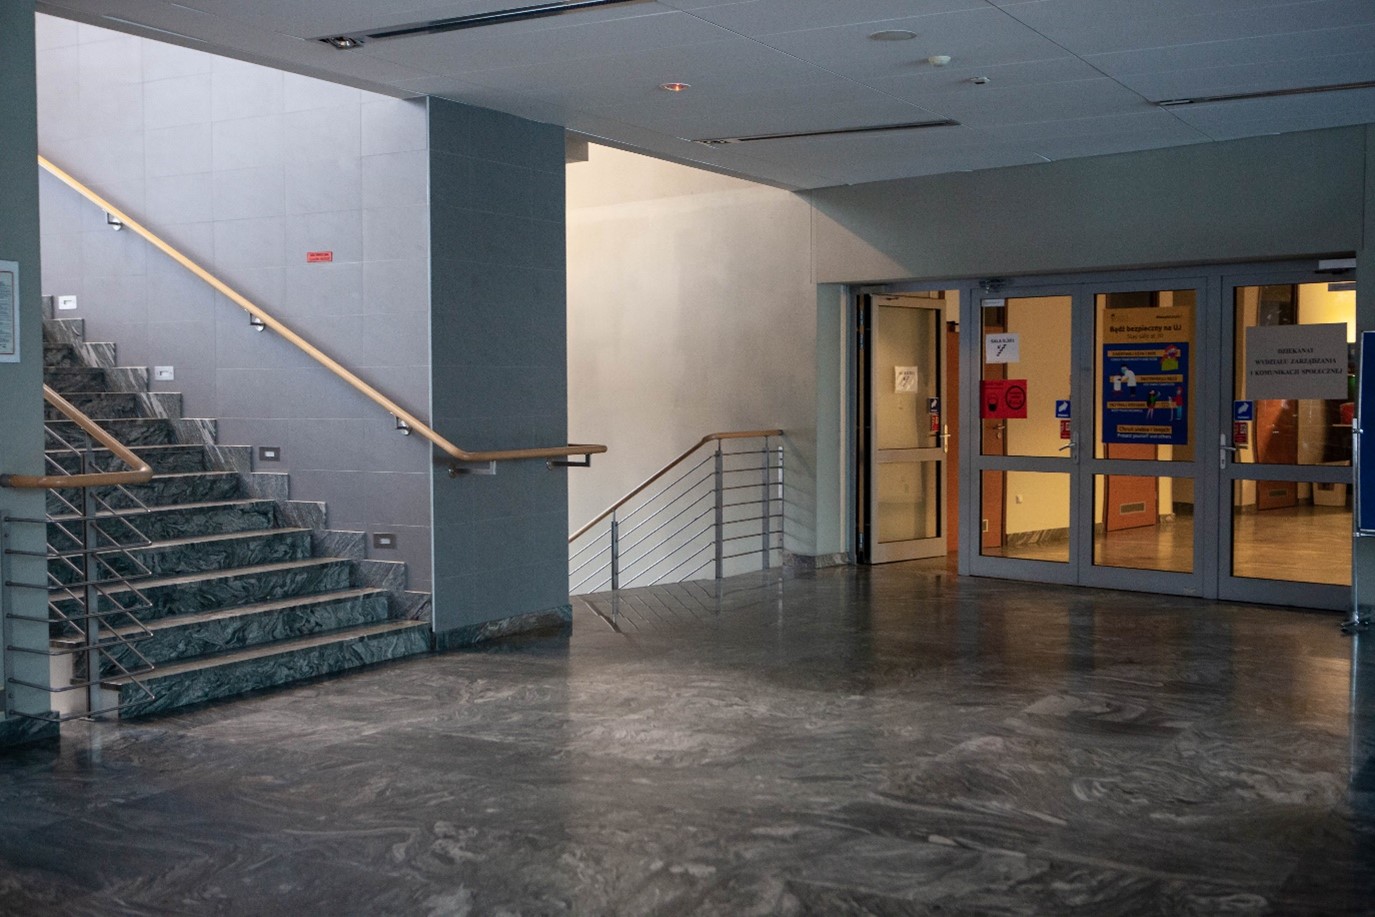 Korytarz budynku Wydziału Zarządzania i Komunikacji Społecznej. z lewej strony otwarta klatka schodowa z drewnianą poręczą po obu stronach schodów. Obok schodów przeszklone drzwi prowadzące do kolejnej części budynku, w której, po lewej znajdują się łazienki.